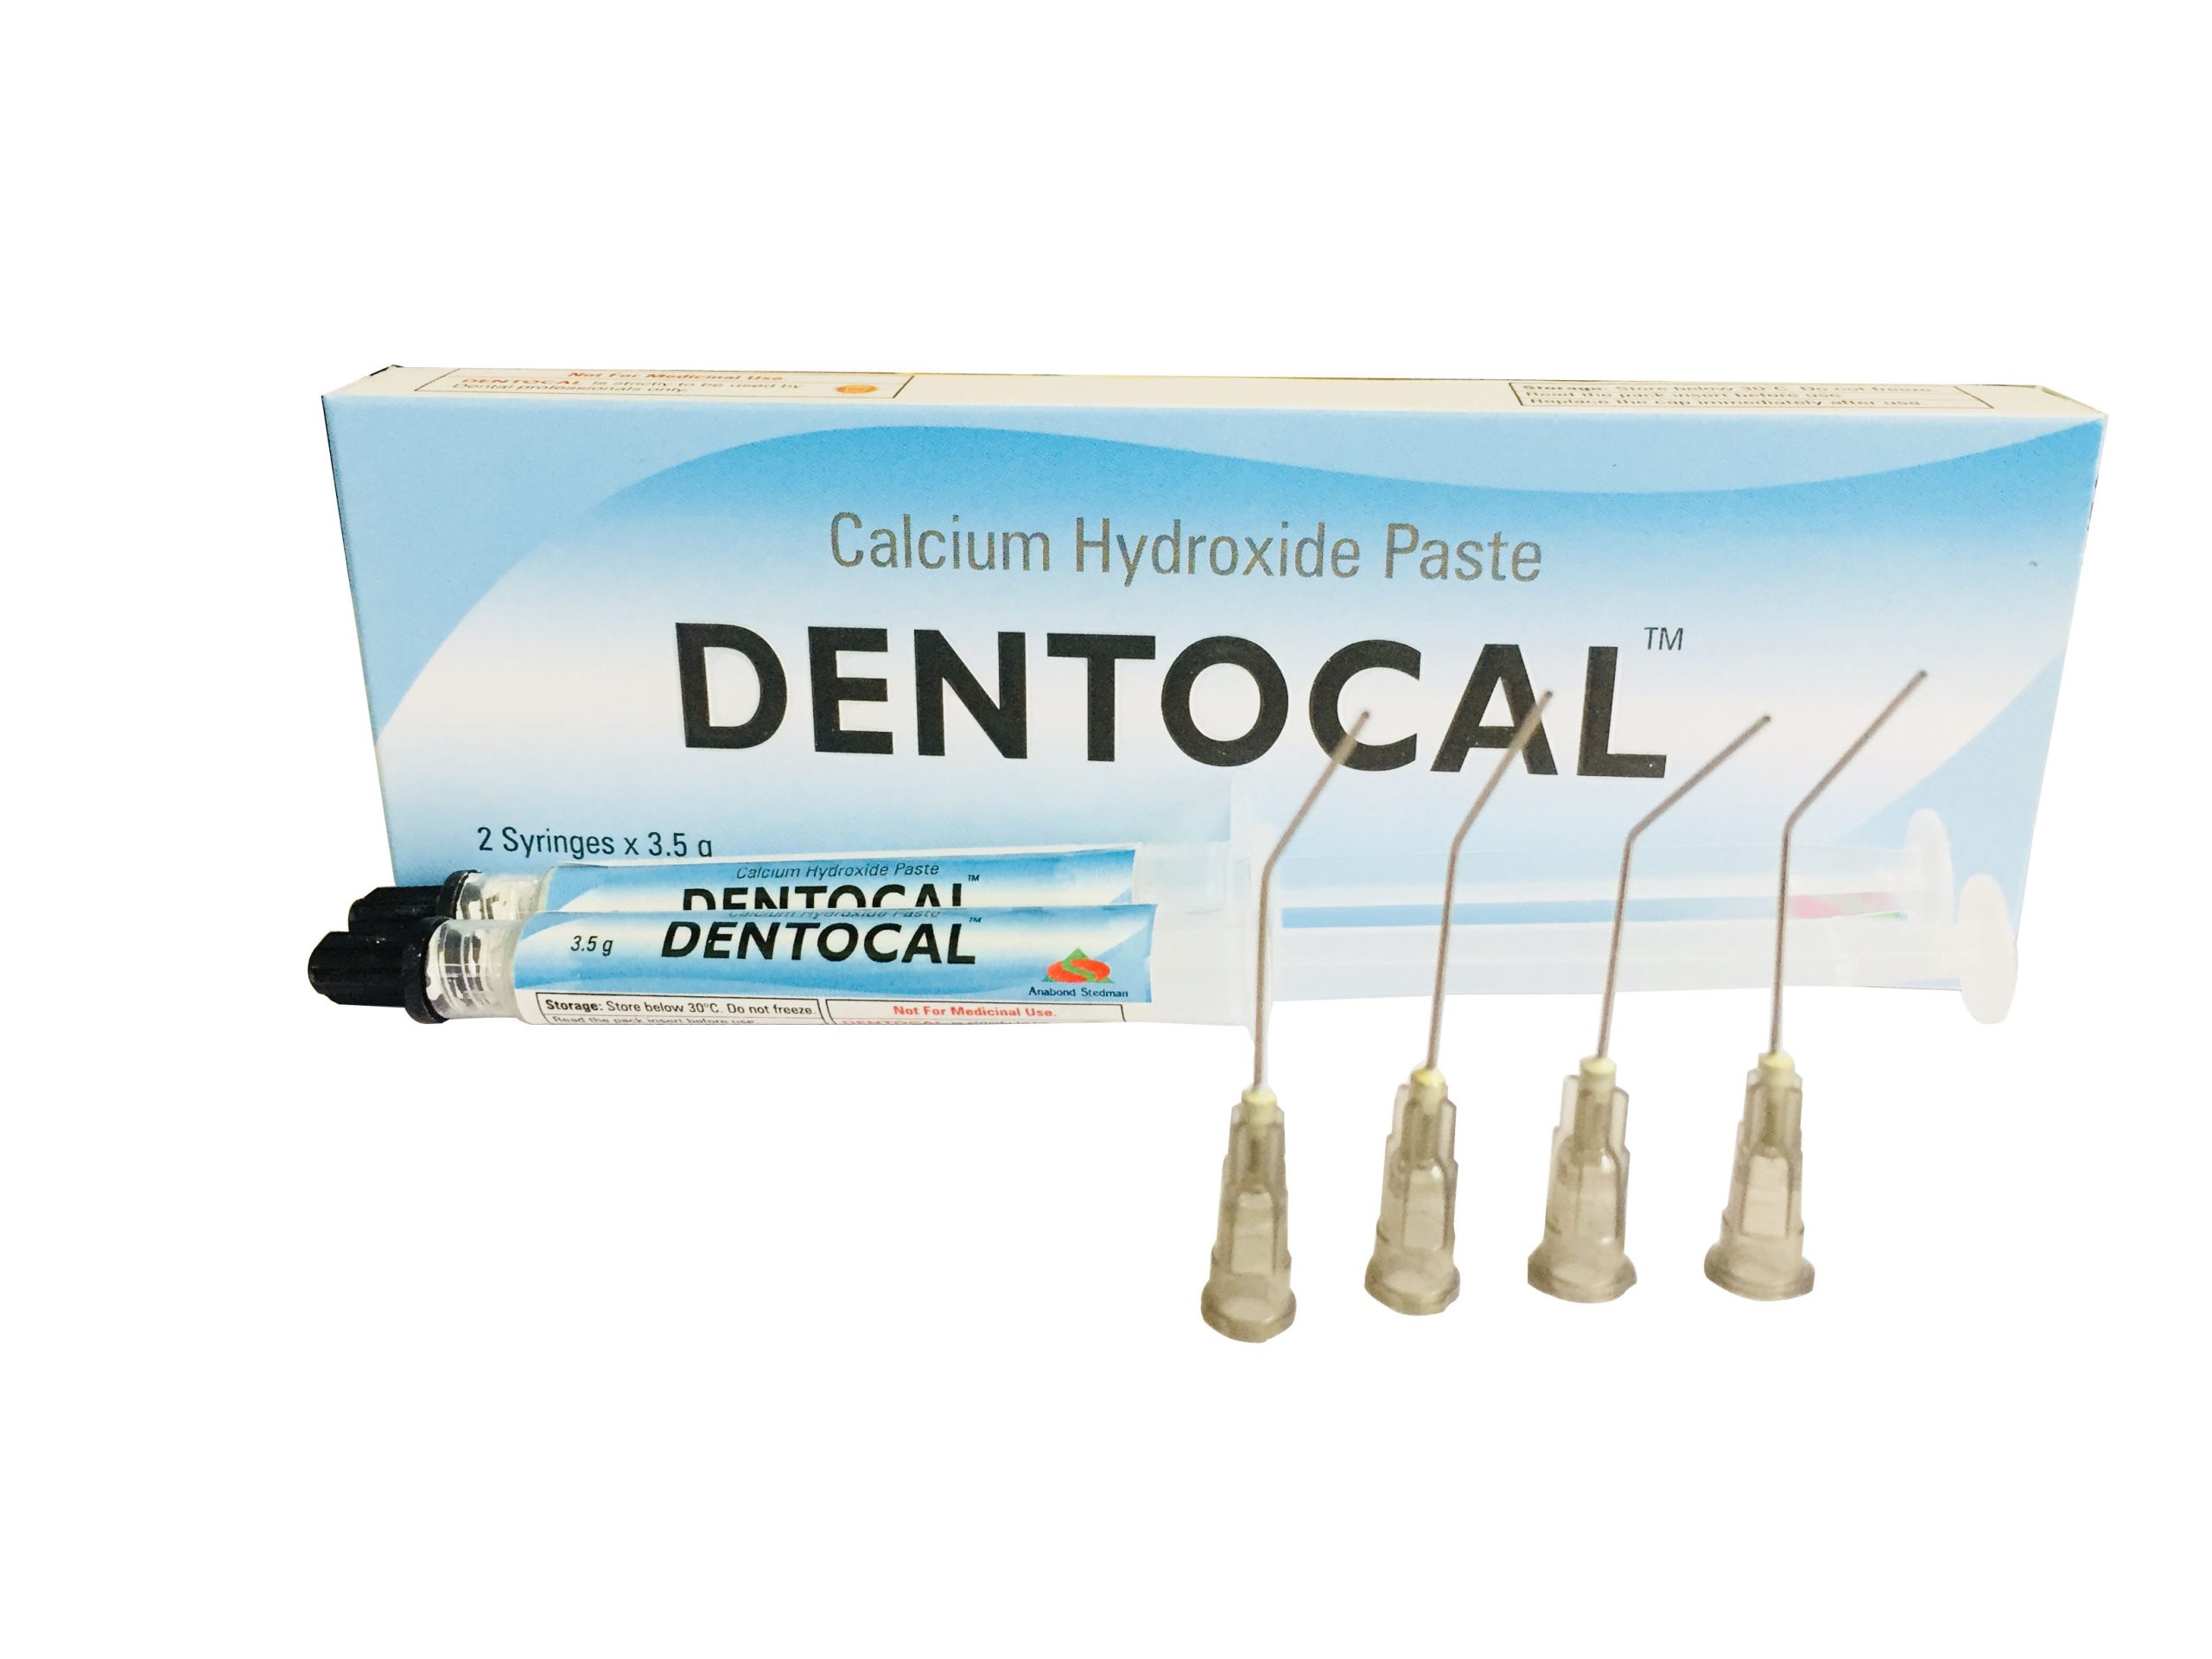 Anabond Dentocal - Dentalstall India